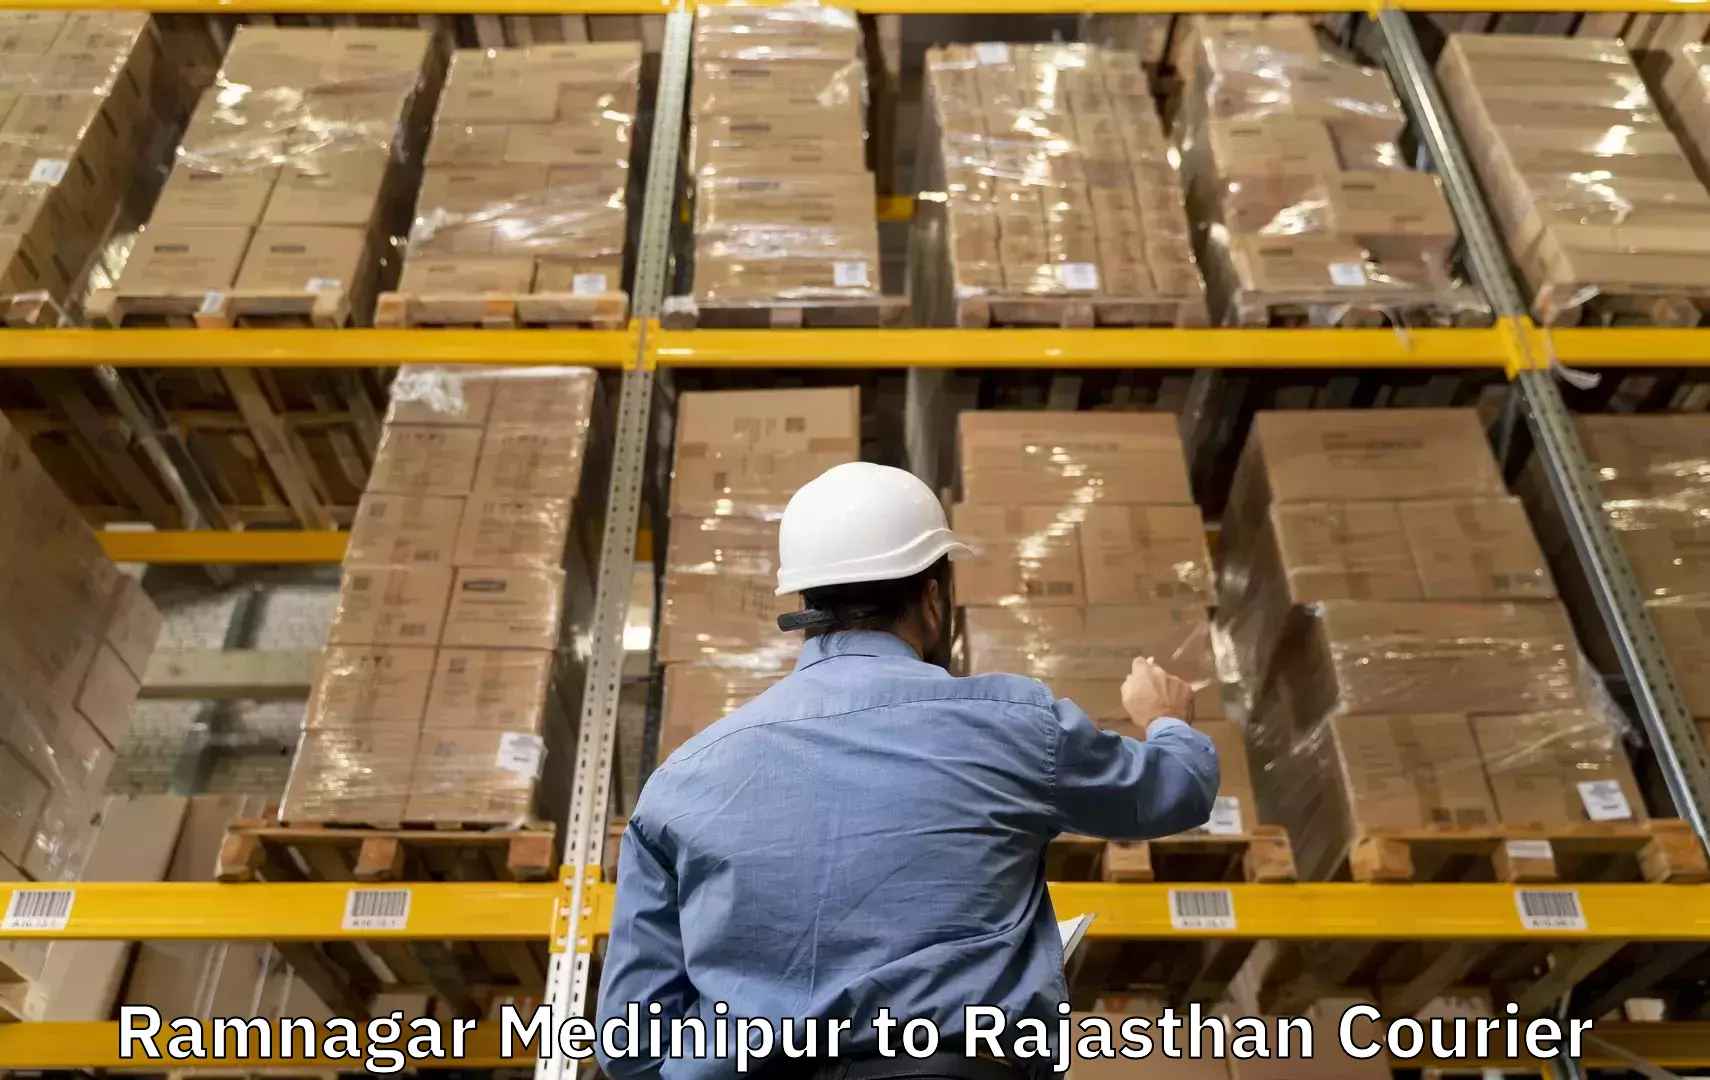 Baggage transport cost Ramnagar Medinipur to Taranagar